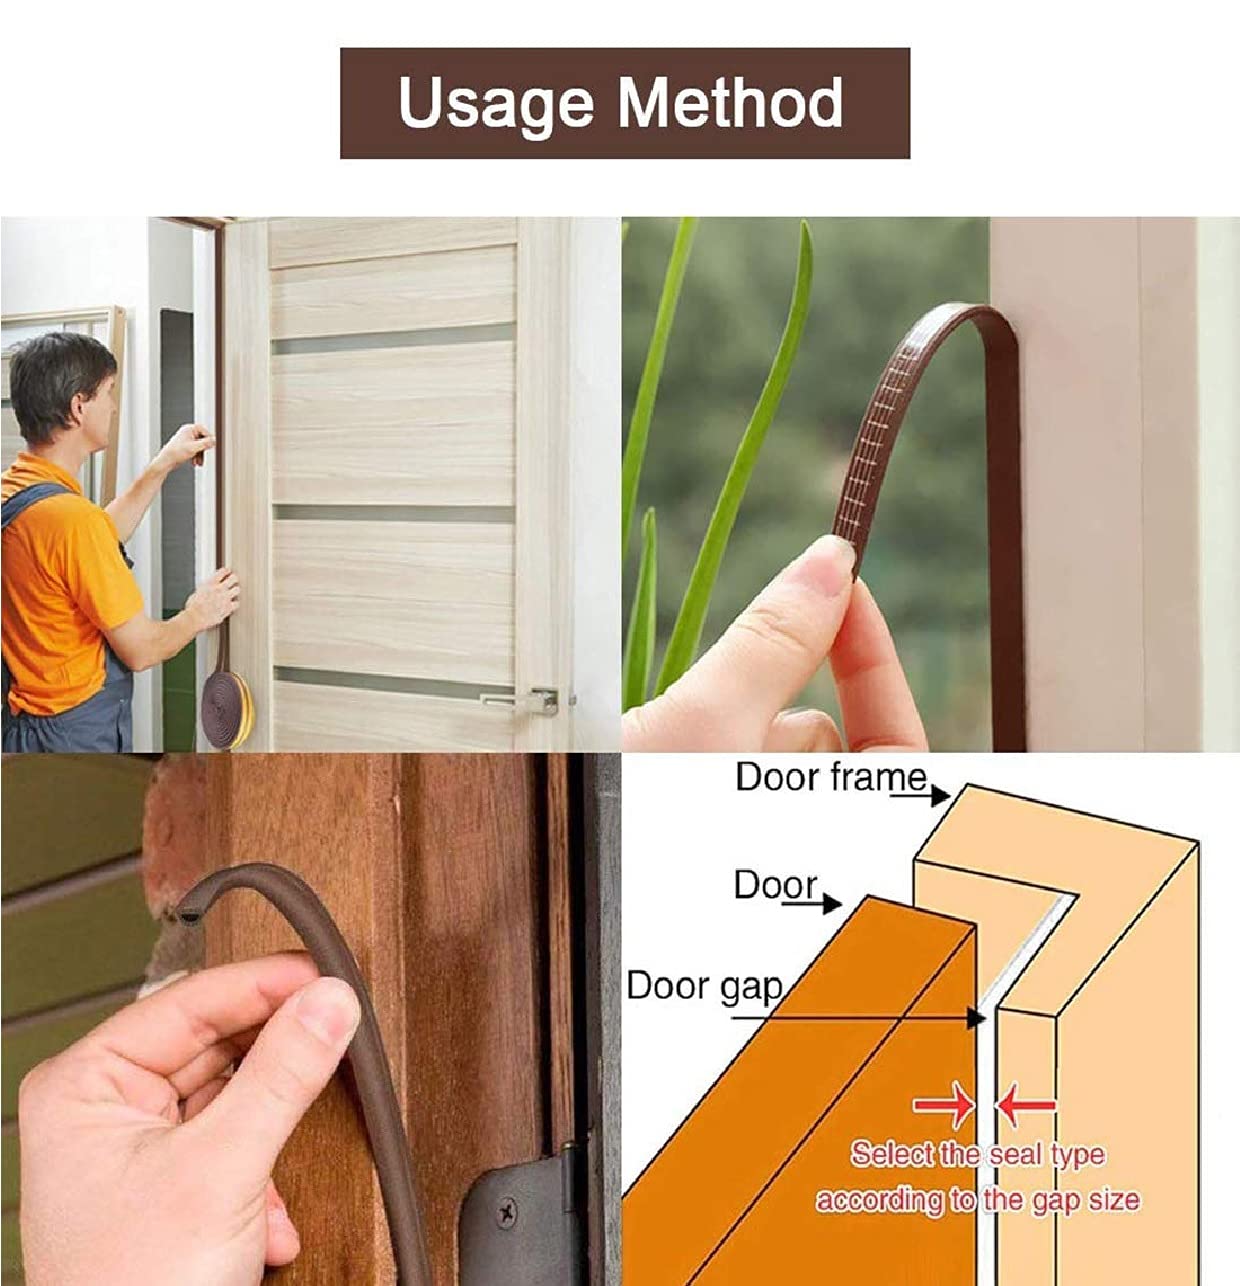 Window Sealing Strips, Door Sealing Strip for Home, Door soundproofing Self-Adhesive Gap Sealing Tape, Car Door Gap Sealer Royalkart in